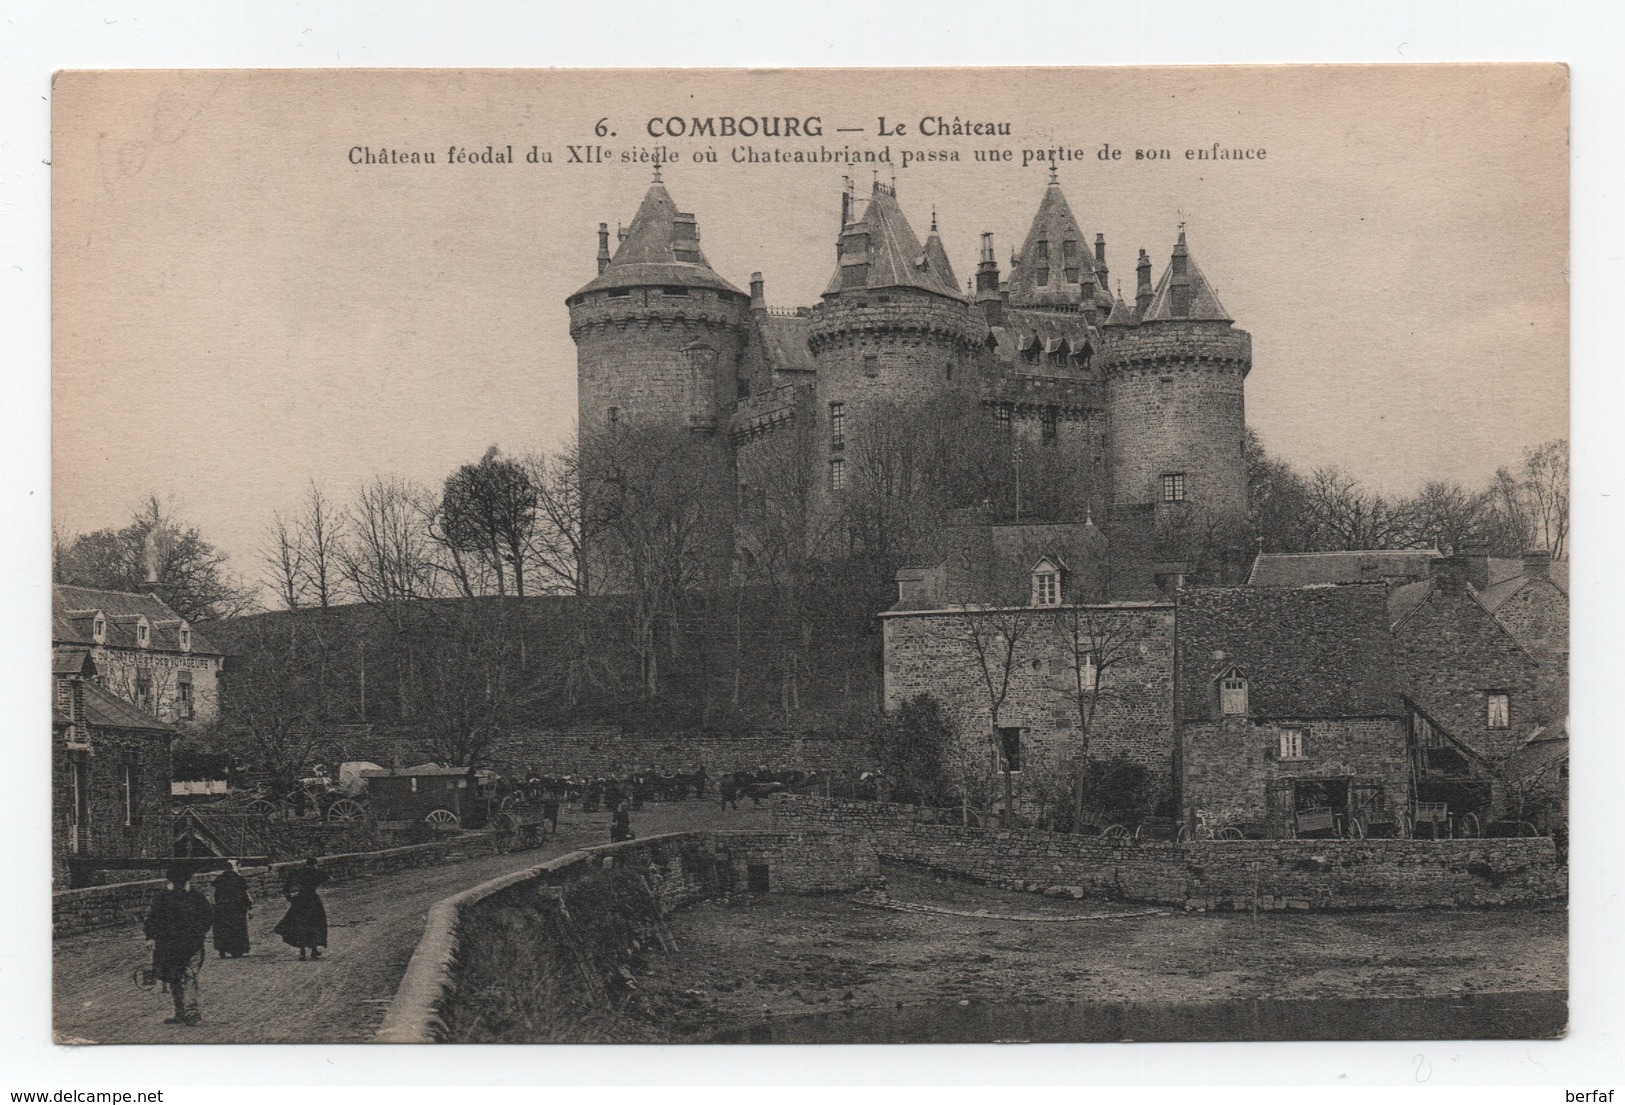 COMBOURG -(35) - Le Château Féodal Du XII Ième Siècle - Marché - Etang - Animation - Non Voyagée - N°6 - TTB. - Combourg